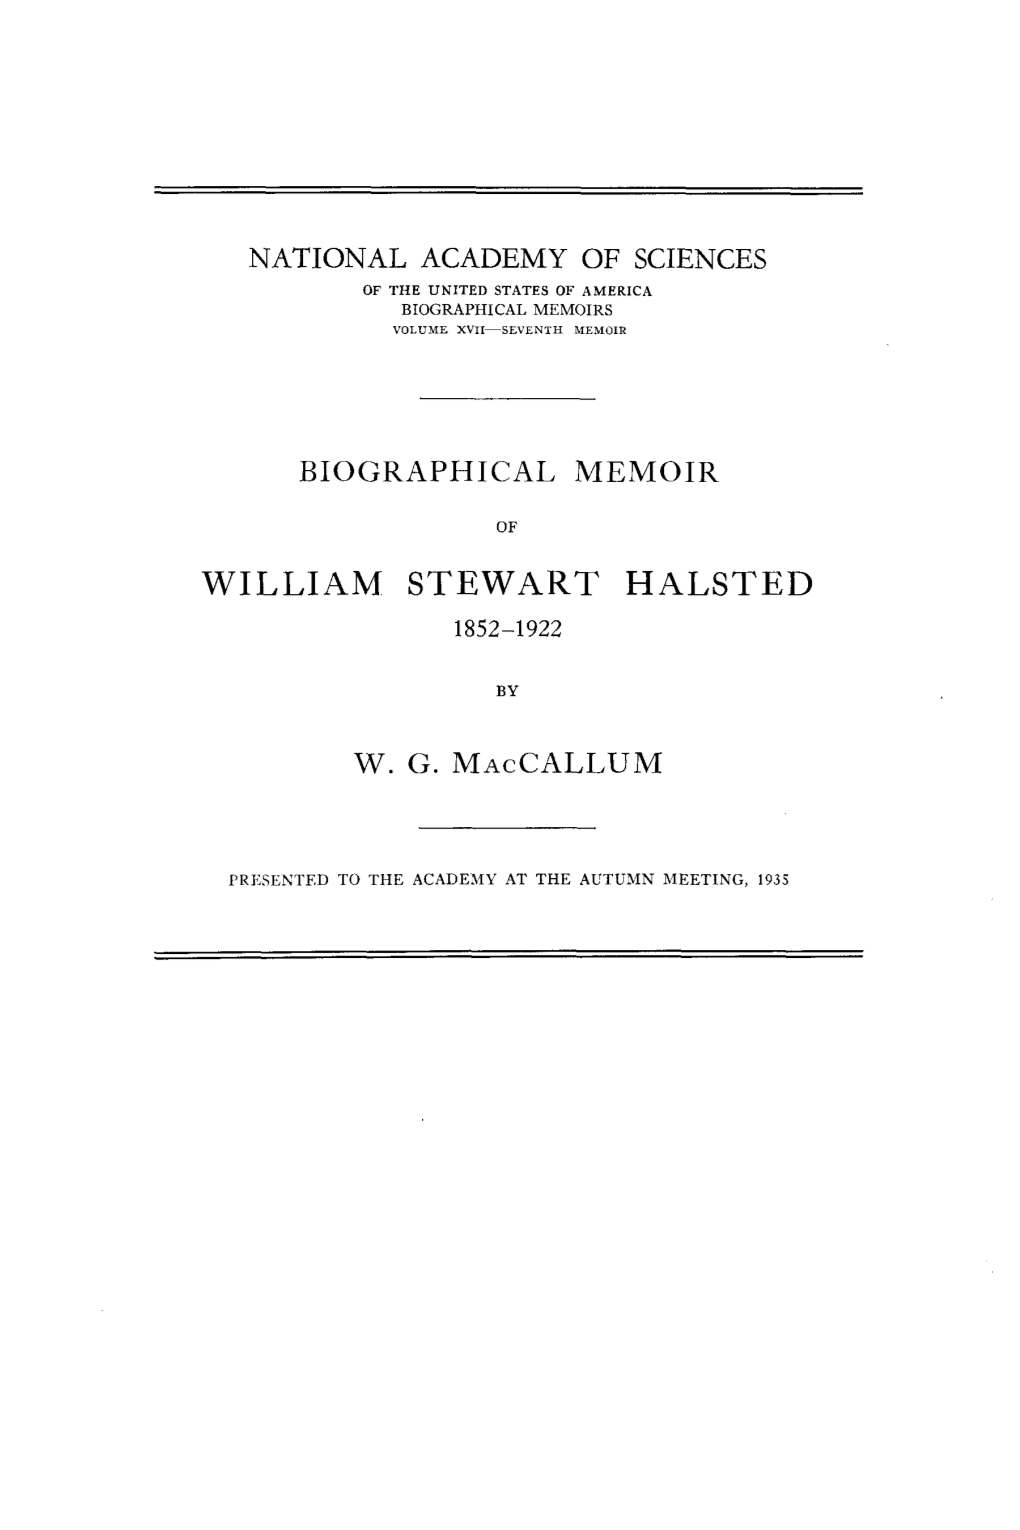 William Stewart Halsted 1852-1922